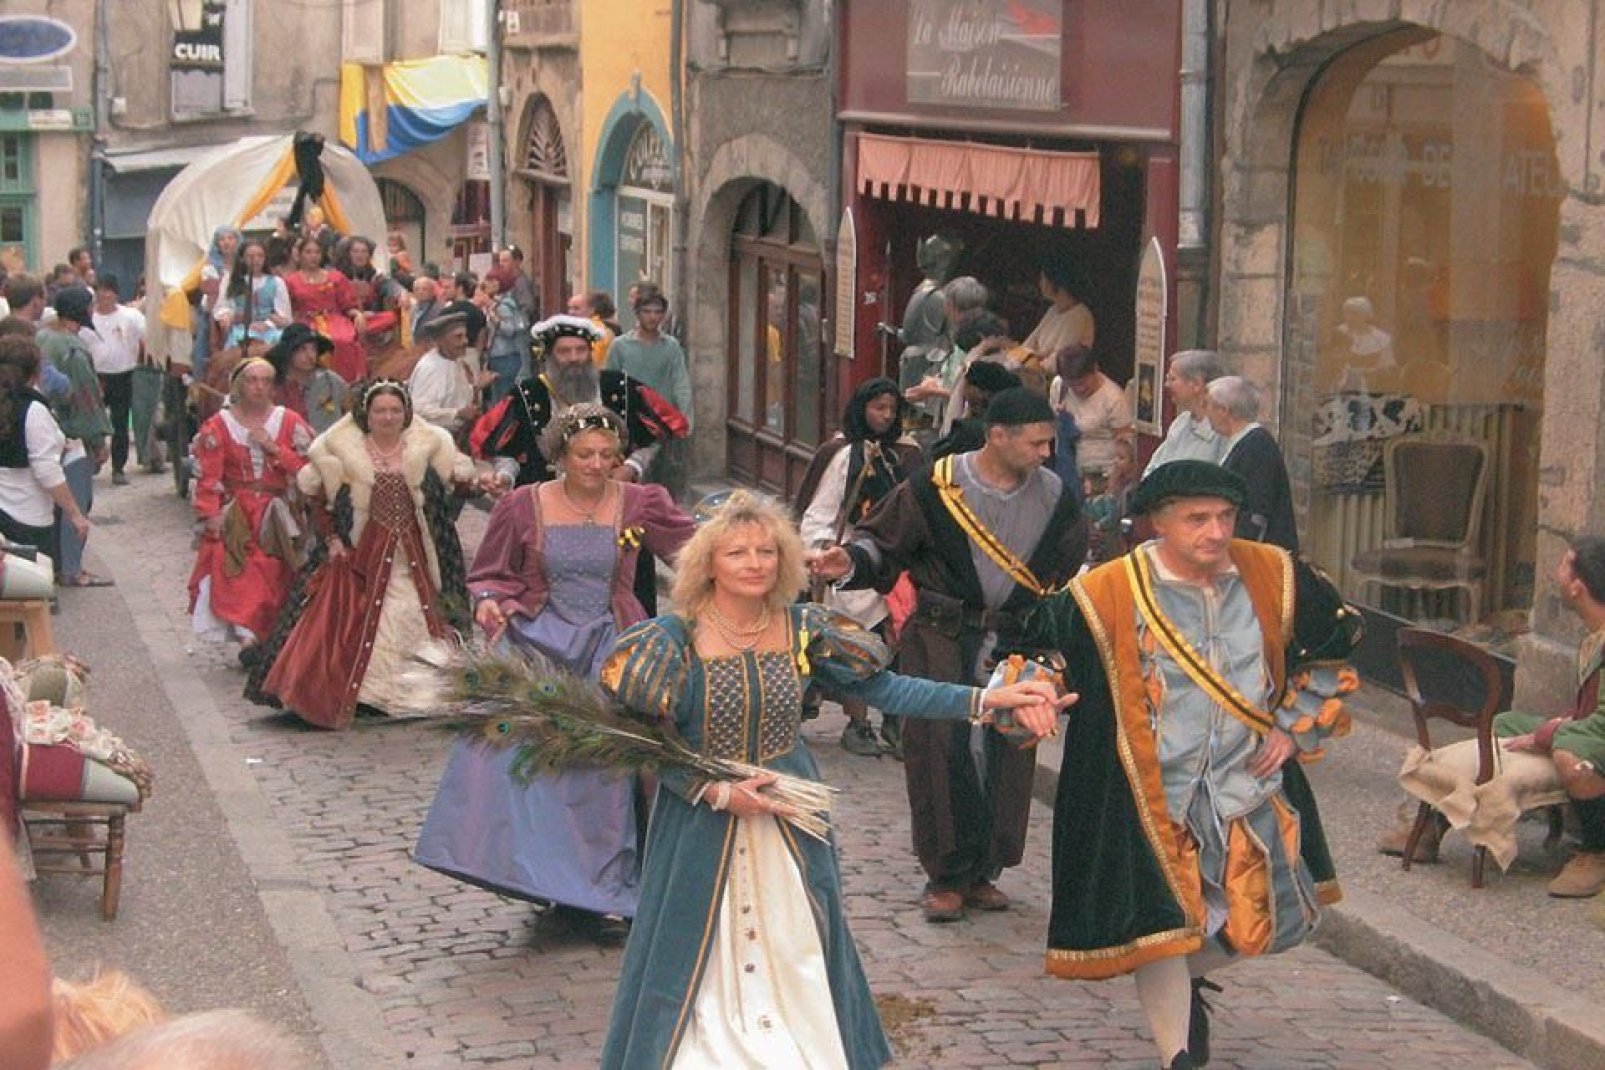 Jedes Jahr im September veranstaltet die Stadt ein großes Renaissance-Fest. Zu dieser Gelegenheit kann man stilechte Kostüme bewundern und nachgespielten historischen Szenen beiwohnen.